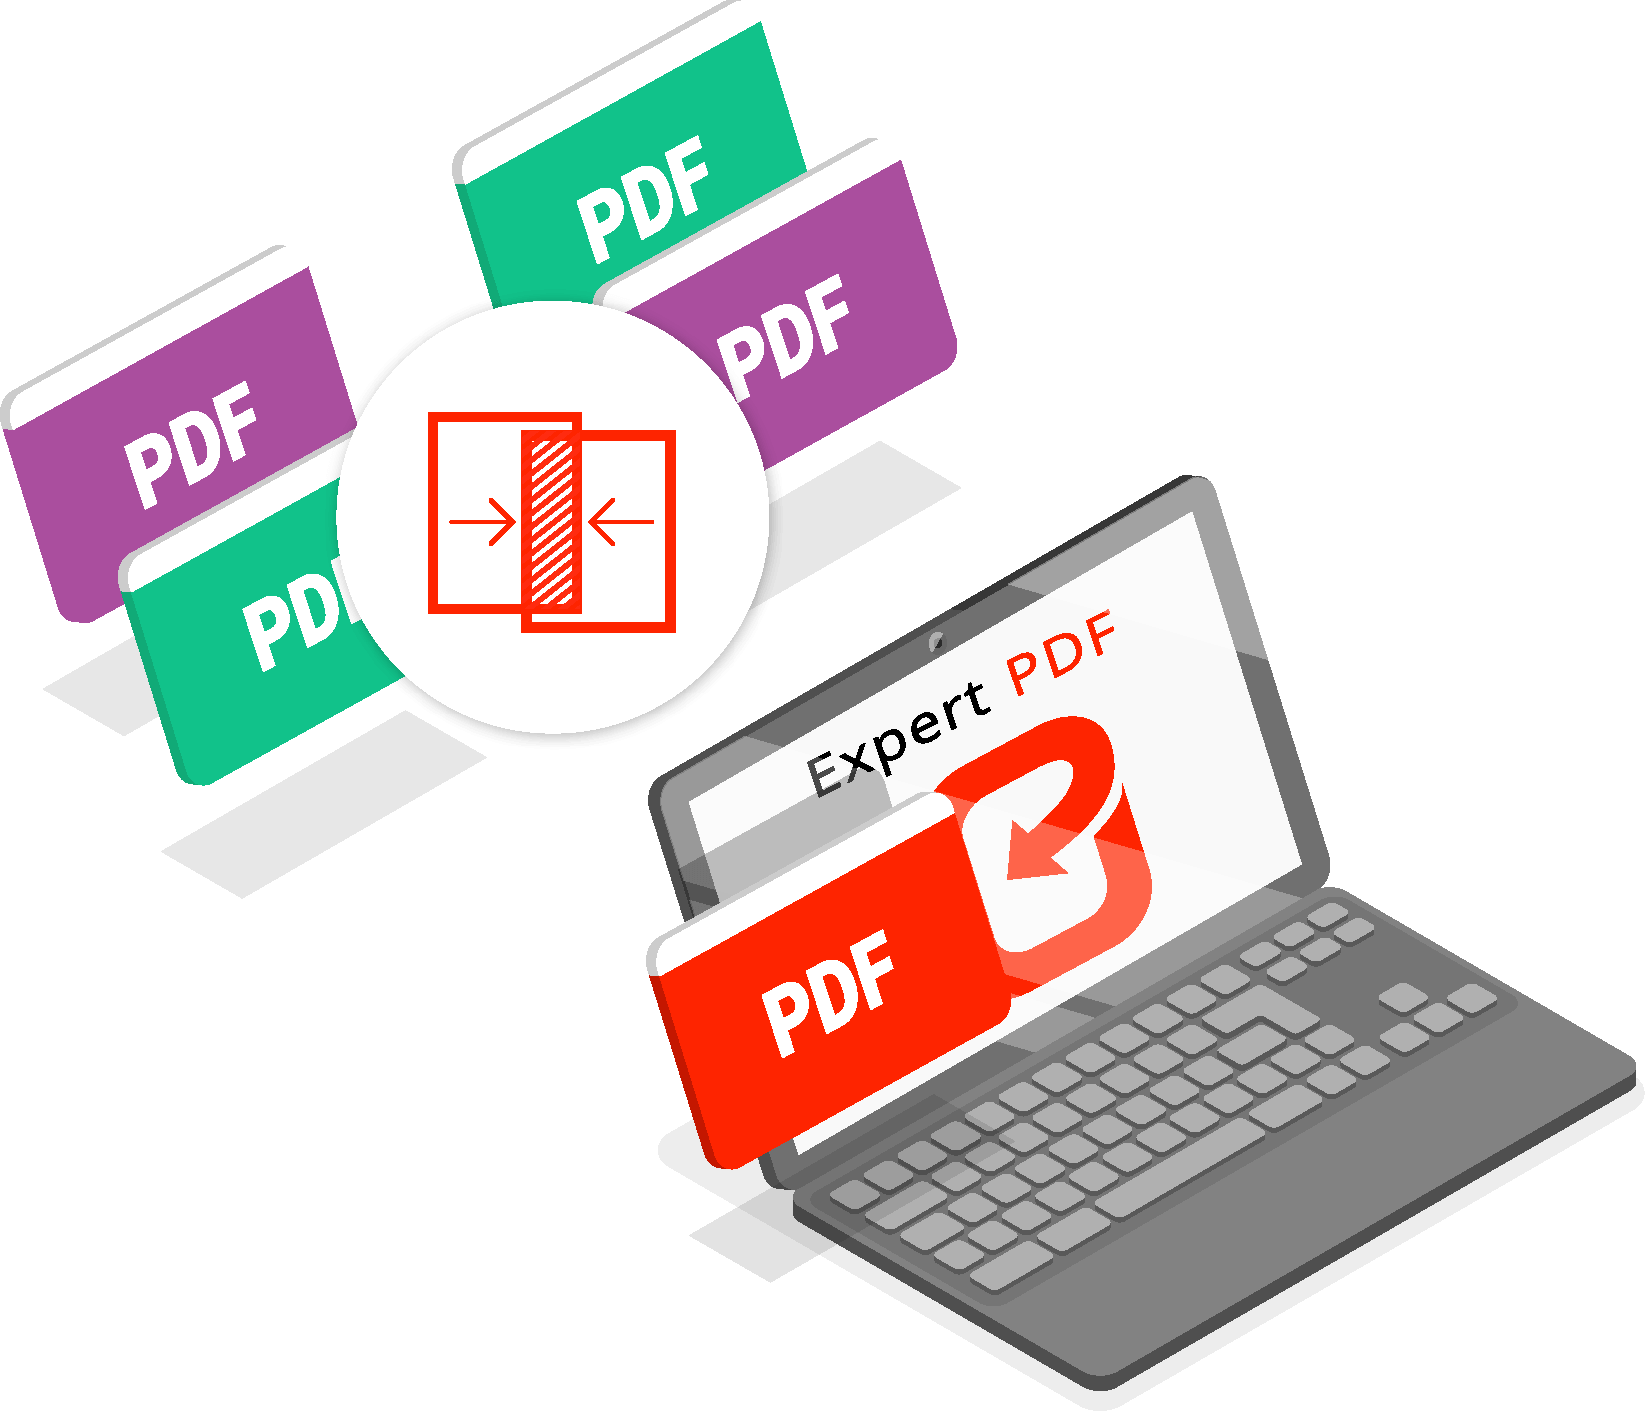 HOW TO MERGE PDF FILES